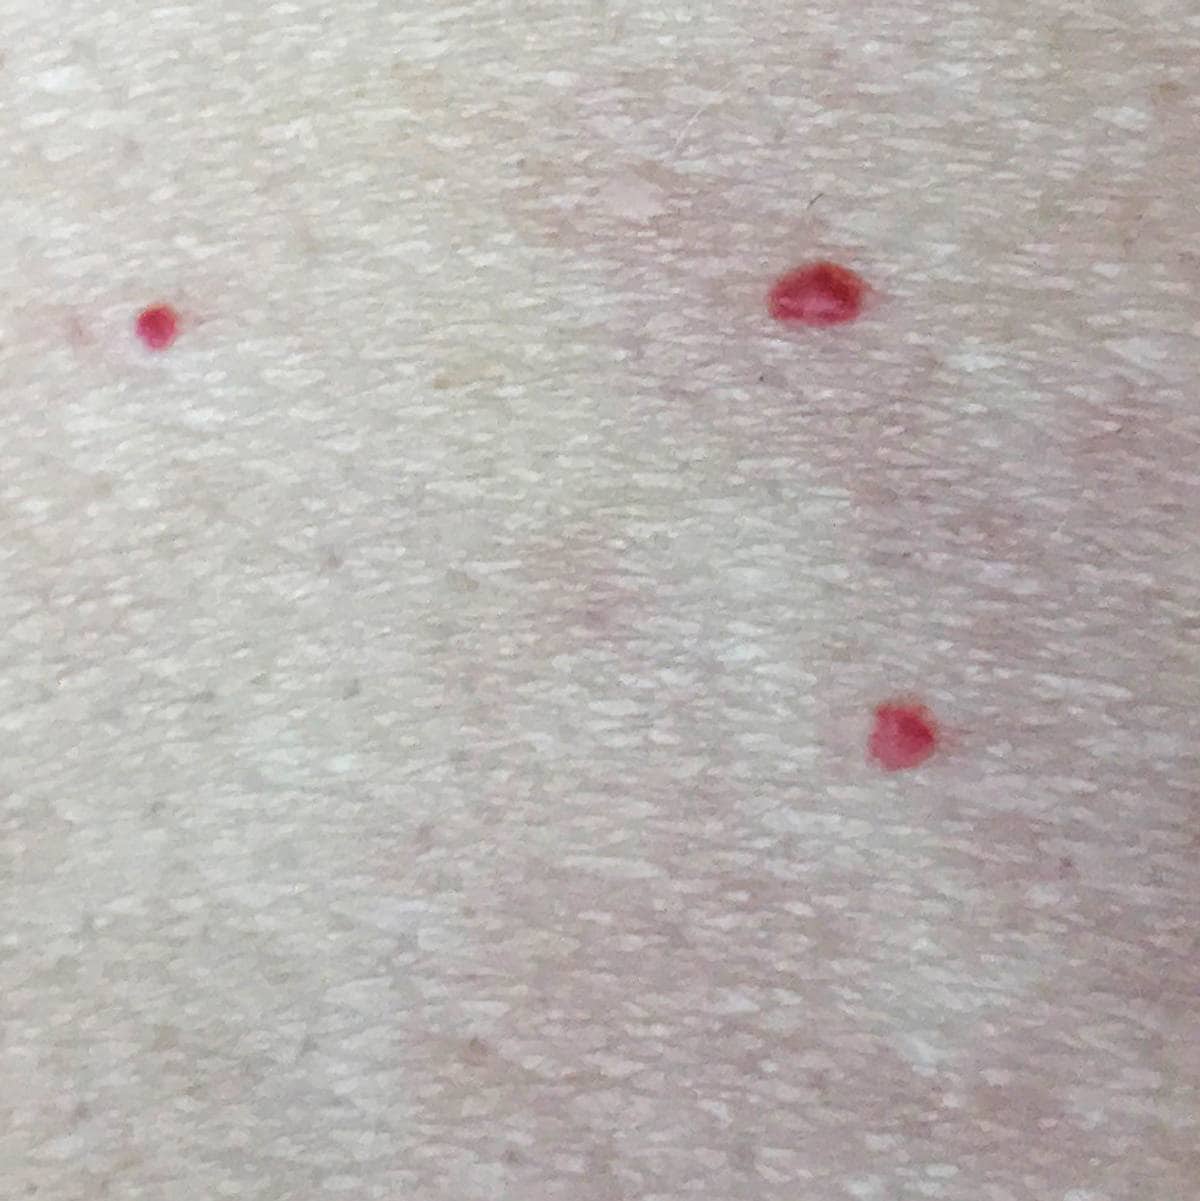 Små røde prikker i huden